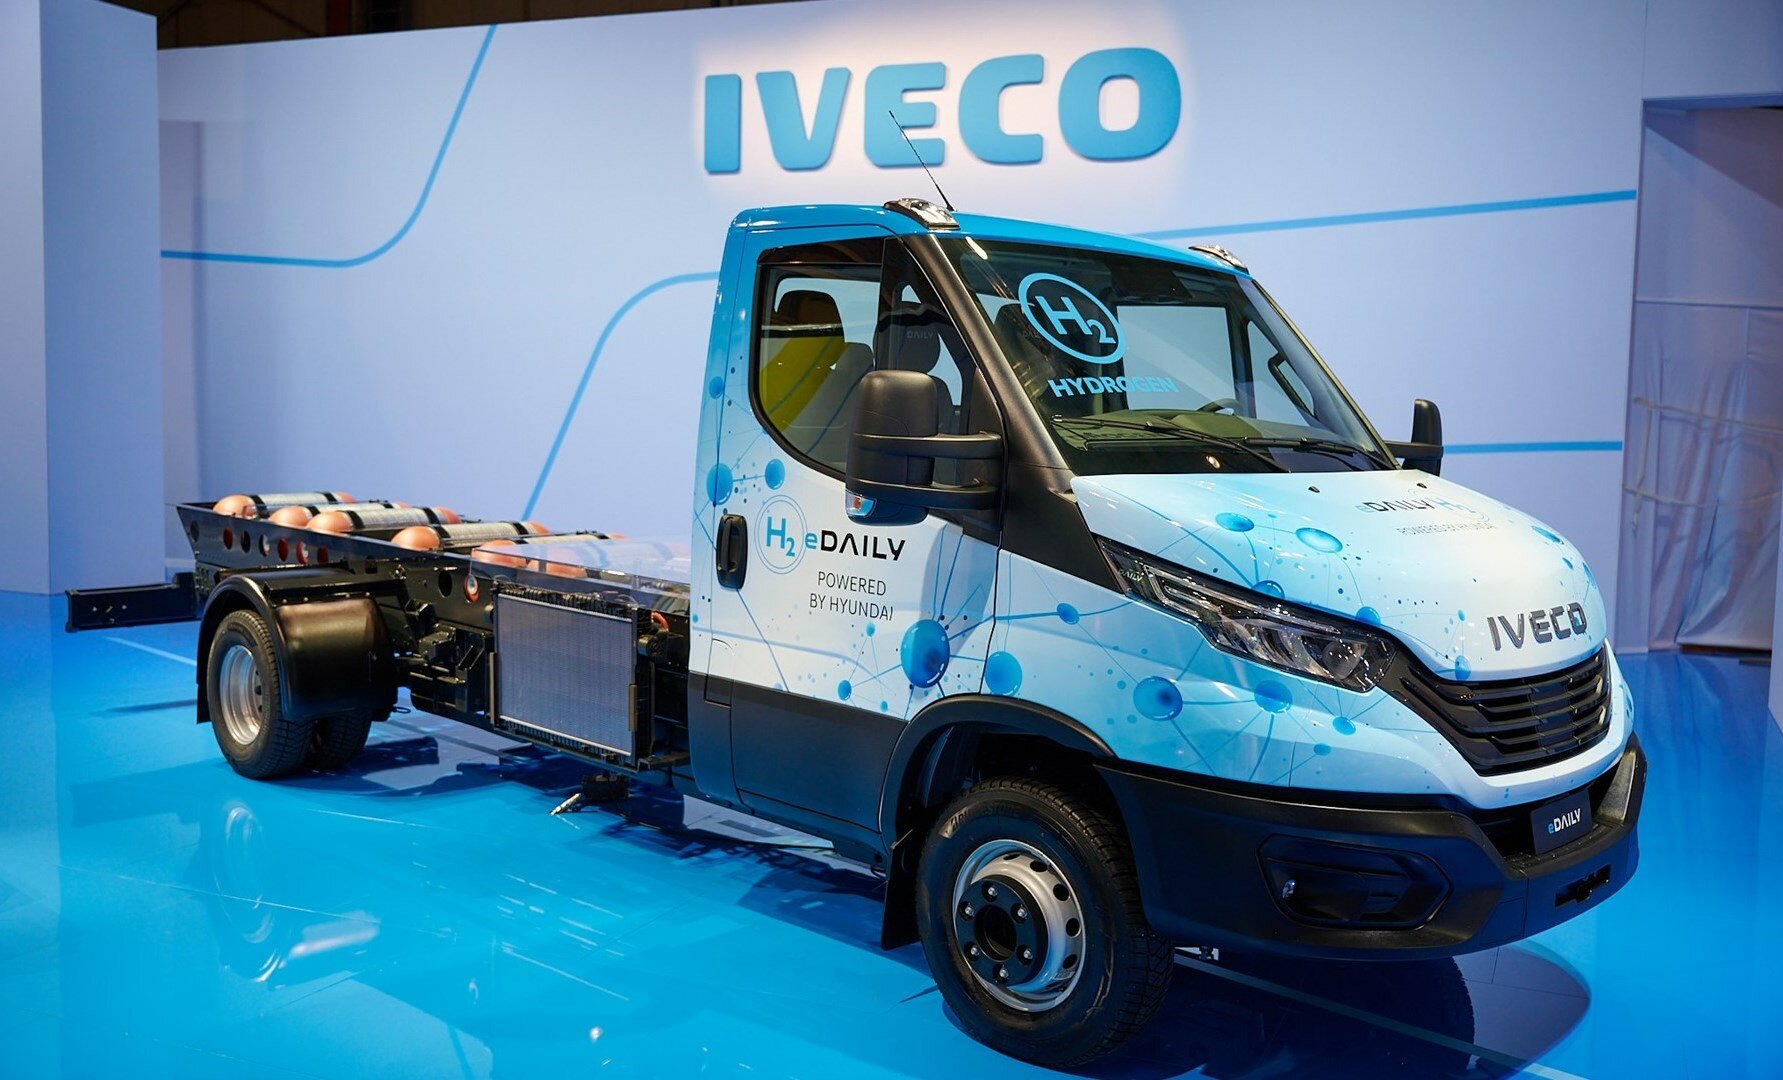 Iveco a Hyundai představily prototyp dodávky eDaily na vodíkový ...